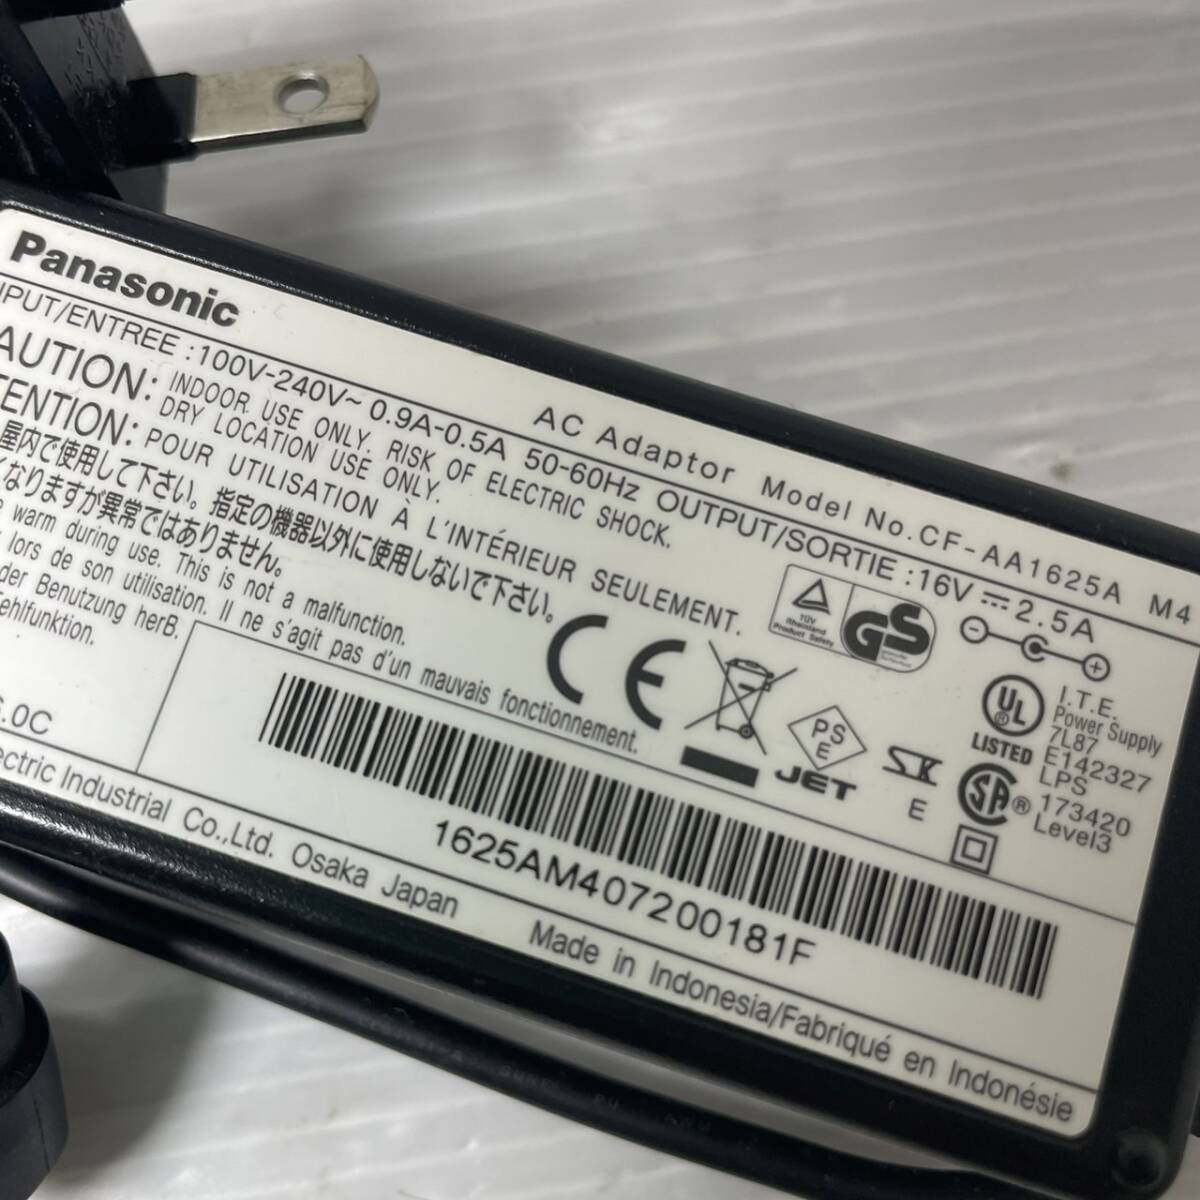 Panasonicパナソニック純正 CF-AA1625A M4 ACアダプタ 16V 2.5A 送料込み価格で安心。_画像3